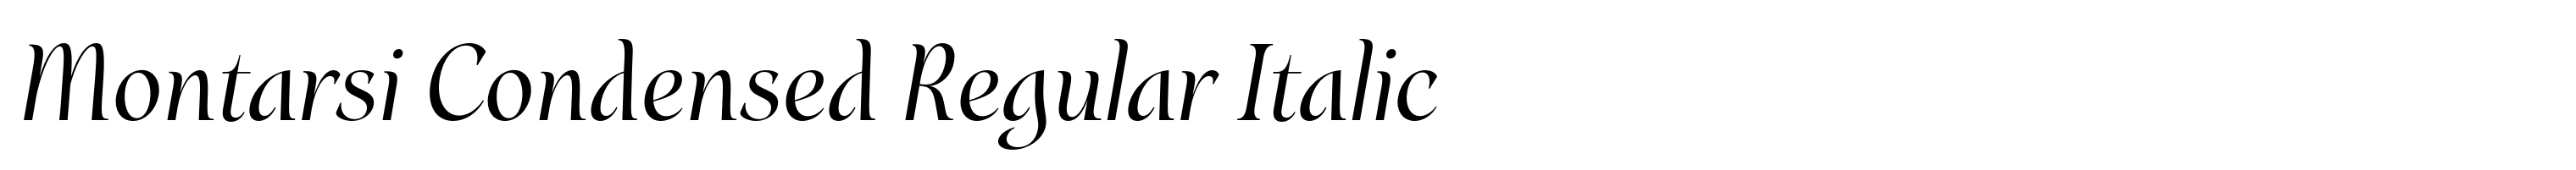 Montarsi Condensed Regular Italic